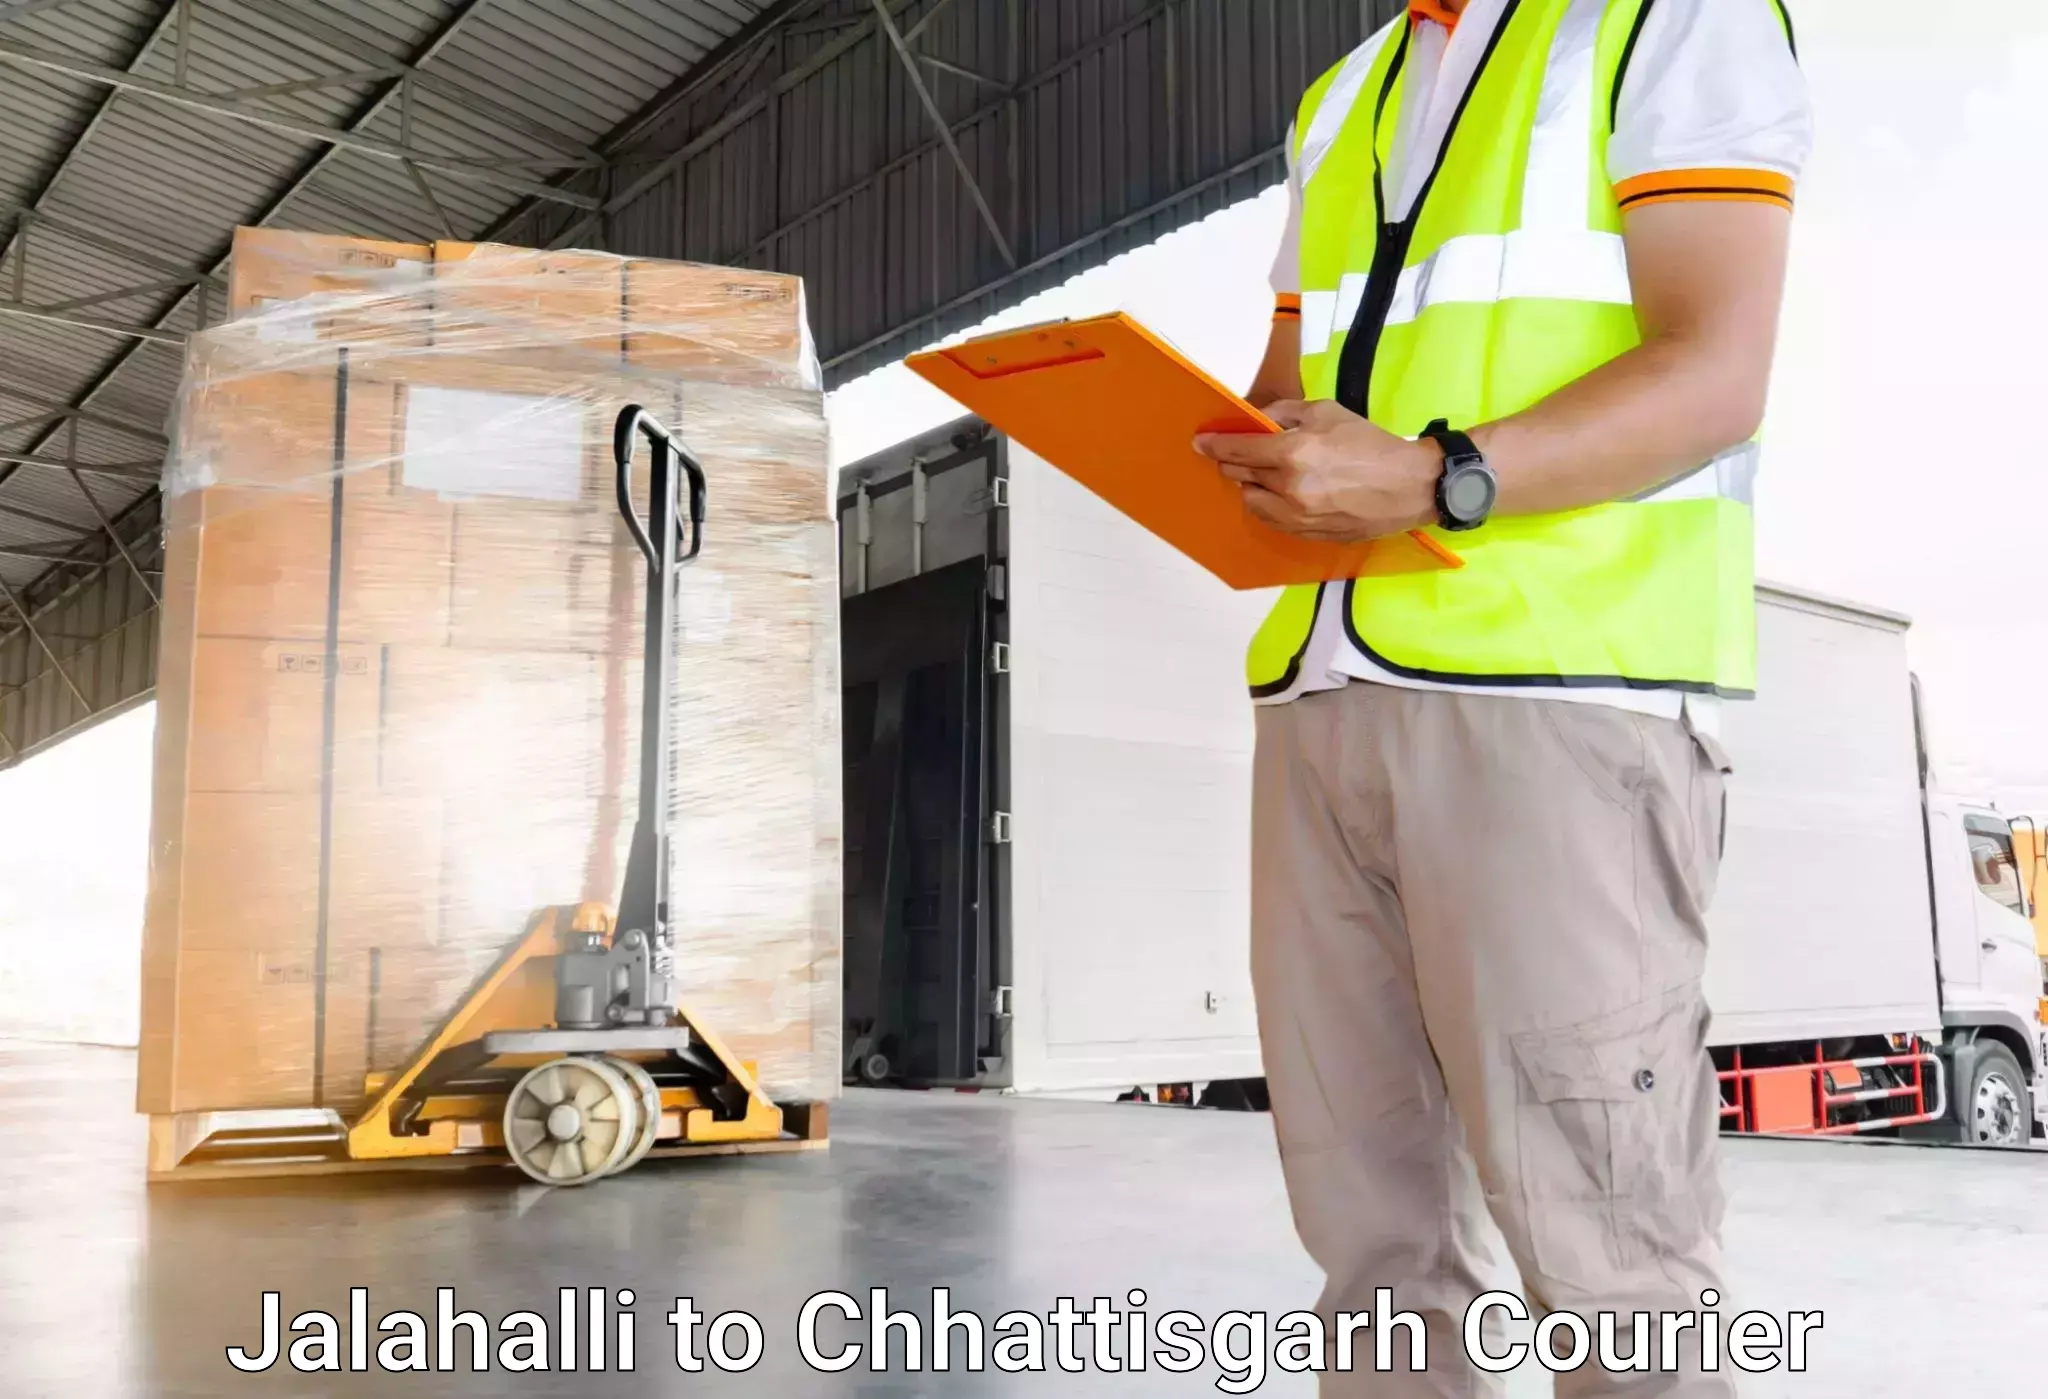 Luggage shipping specialists Jalahalli to Jaijaipur